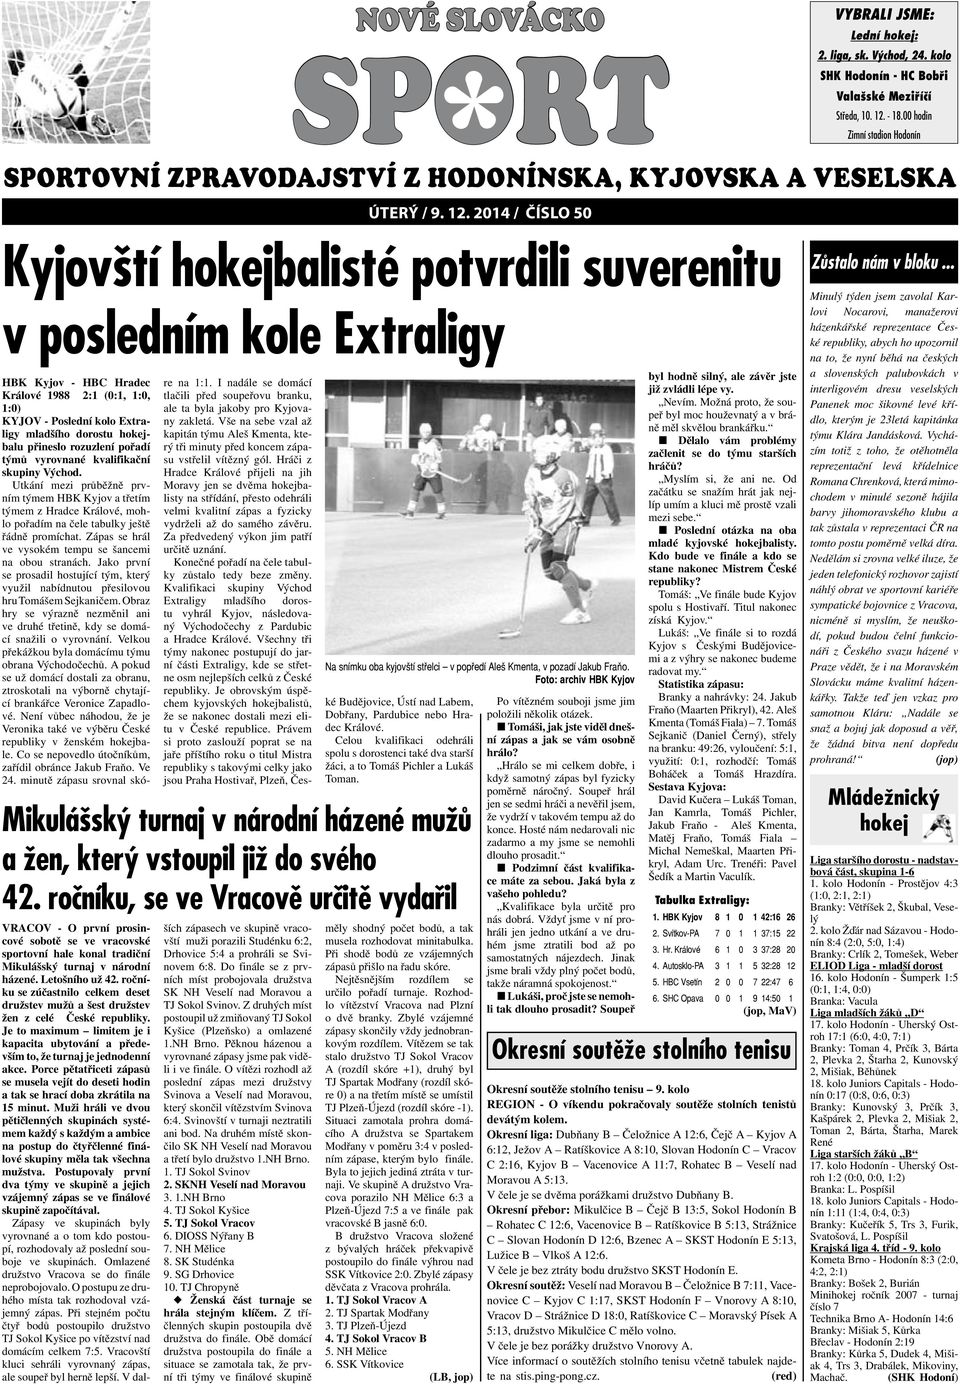 2014 / číslo 50 vybrali jsme: Lední hokej: Kyjovští hokejbalisté potvrdili suverenitu v posledním kole Extraligy HBK Kyjov - HBC Hradec Králové 1988 2:1 (0:1, 1:0, 1:0) KYJOV - Poslední kolo